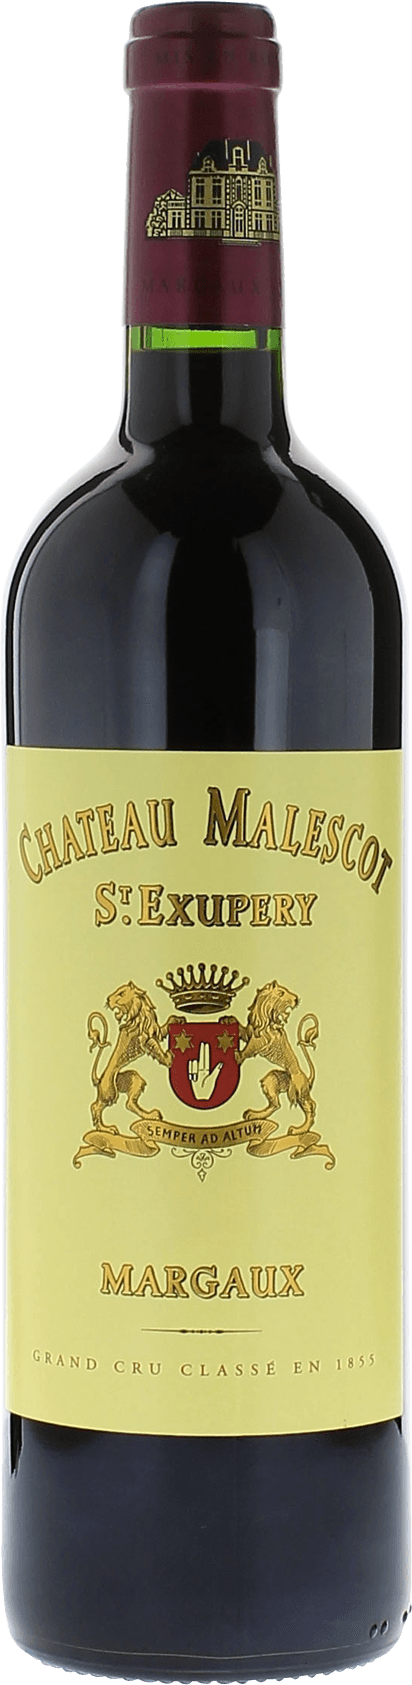 Malescot saint exupery 2015 3me Grand cru class Margaux, Bordeaux rouge